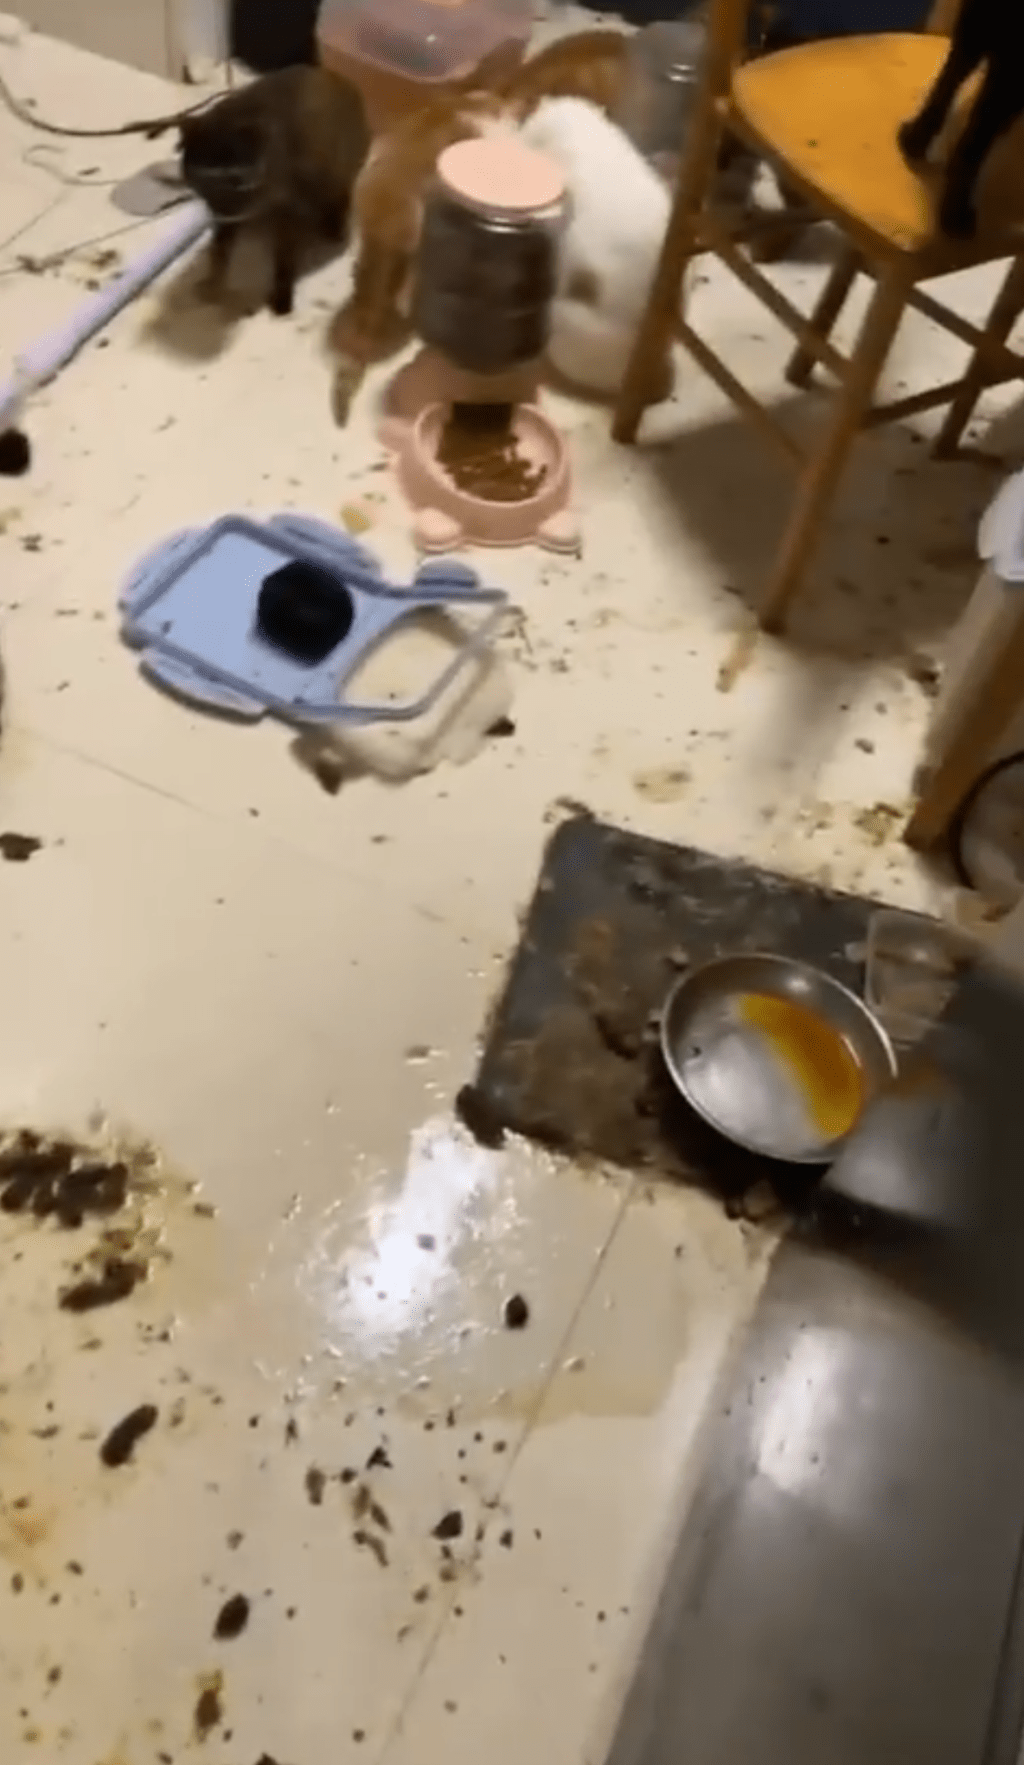 猫粮及粪便混杂在地上。香港拯救猫狗协会片段截图